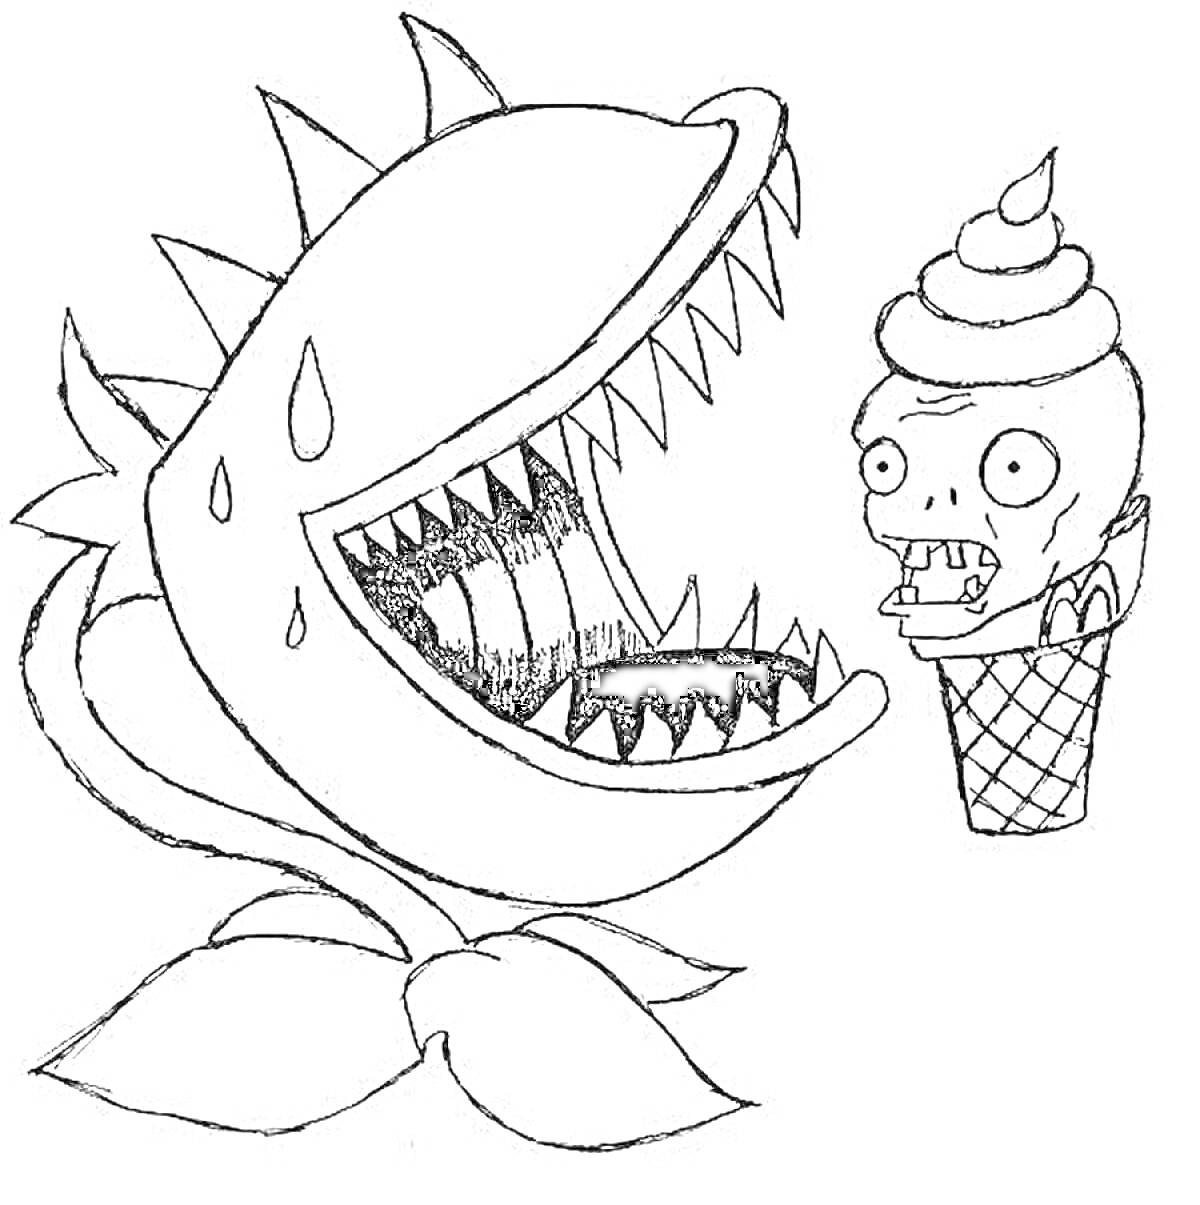 Раскраска Растение с большими зубами и каплями пота против зомби-мороженого